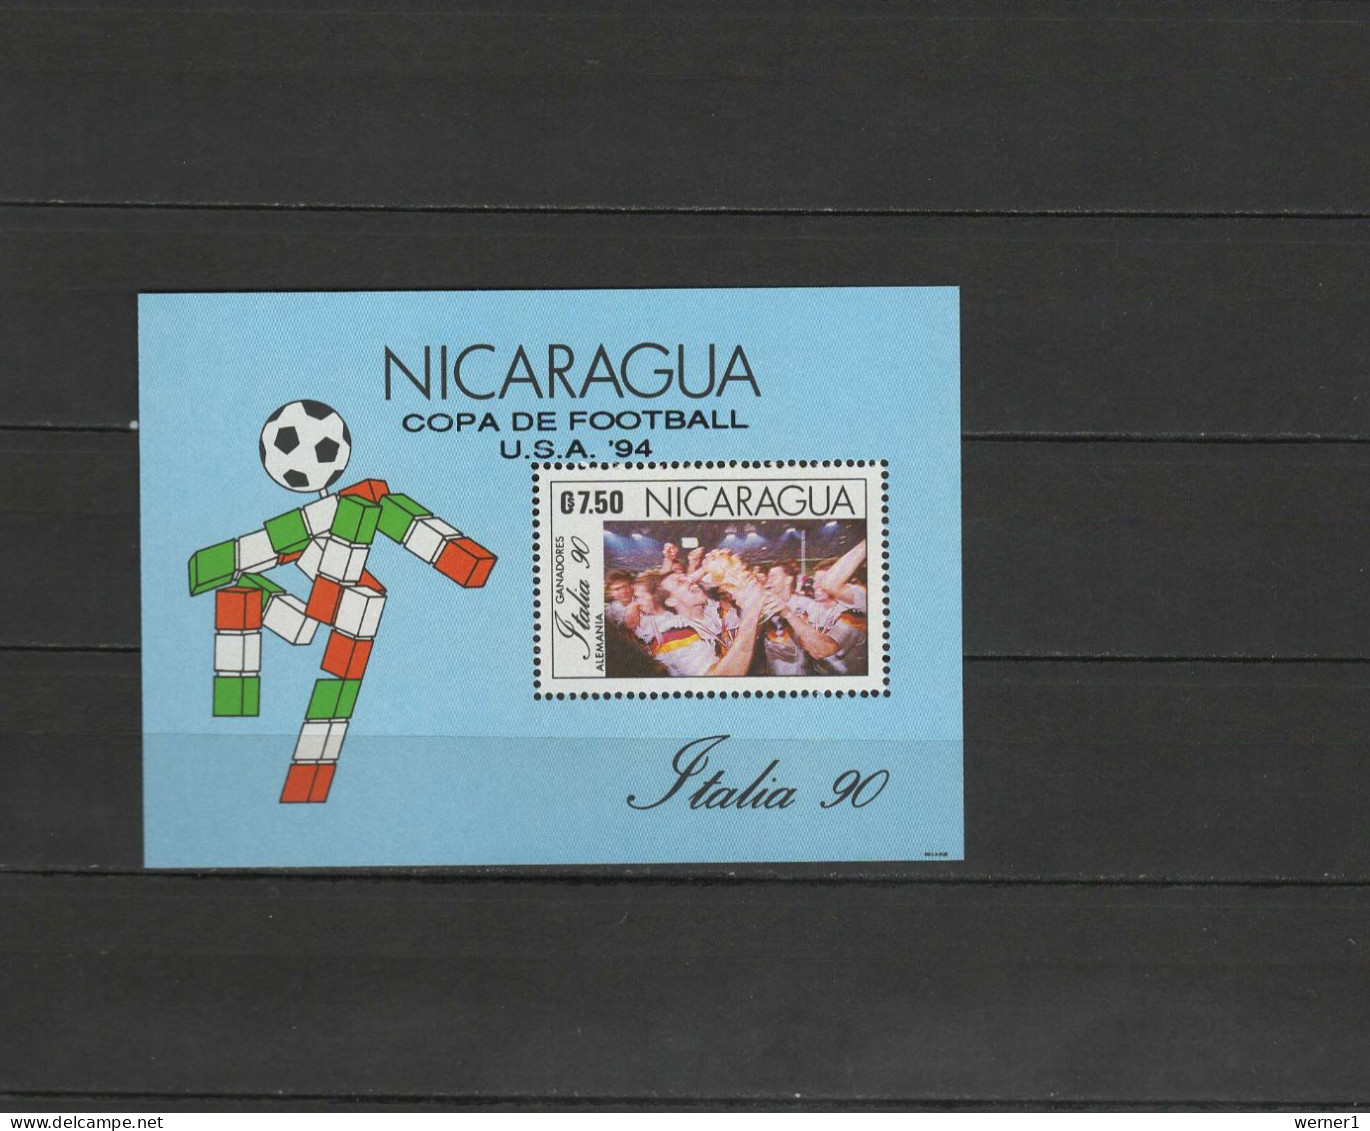 Nicaragua 1991 Football Soccer World Cup S/s With Overprint MNH - 1994 – USA